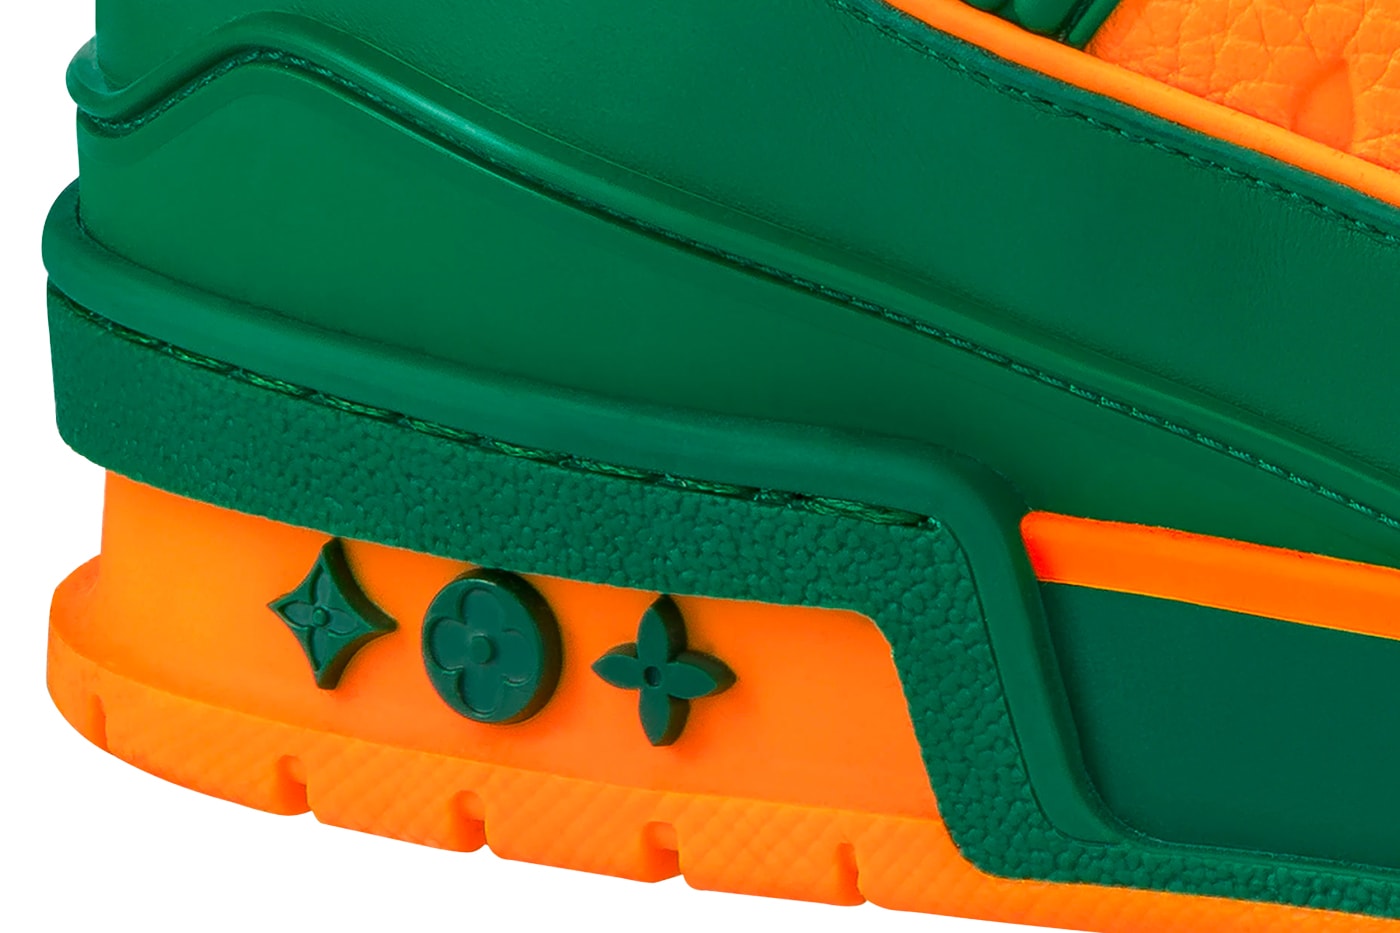 Louis Vuitton trainer sneaker vert green orange Miami nvprod2800230v#1A8WFI release footwear trainers sneakers kicks 